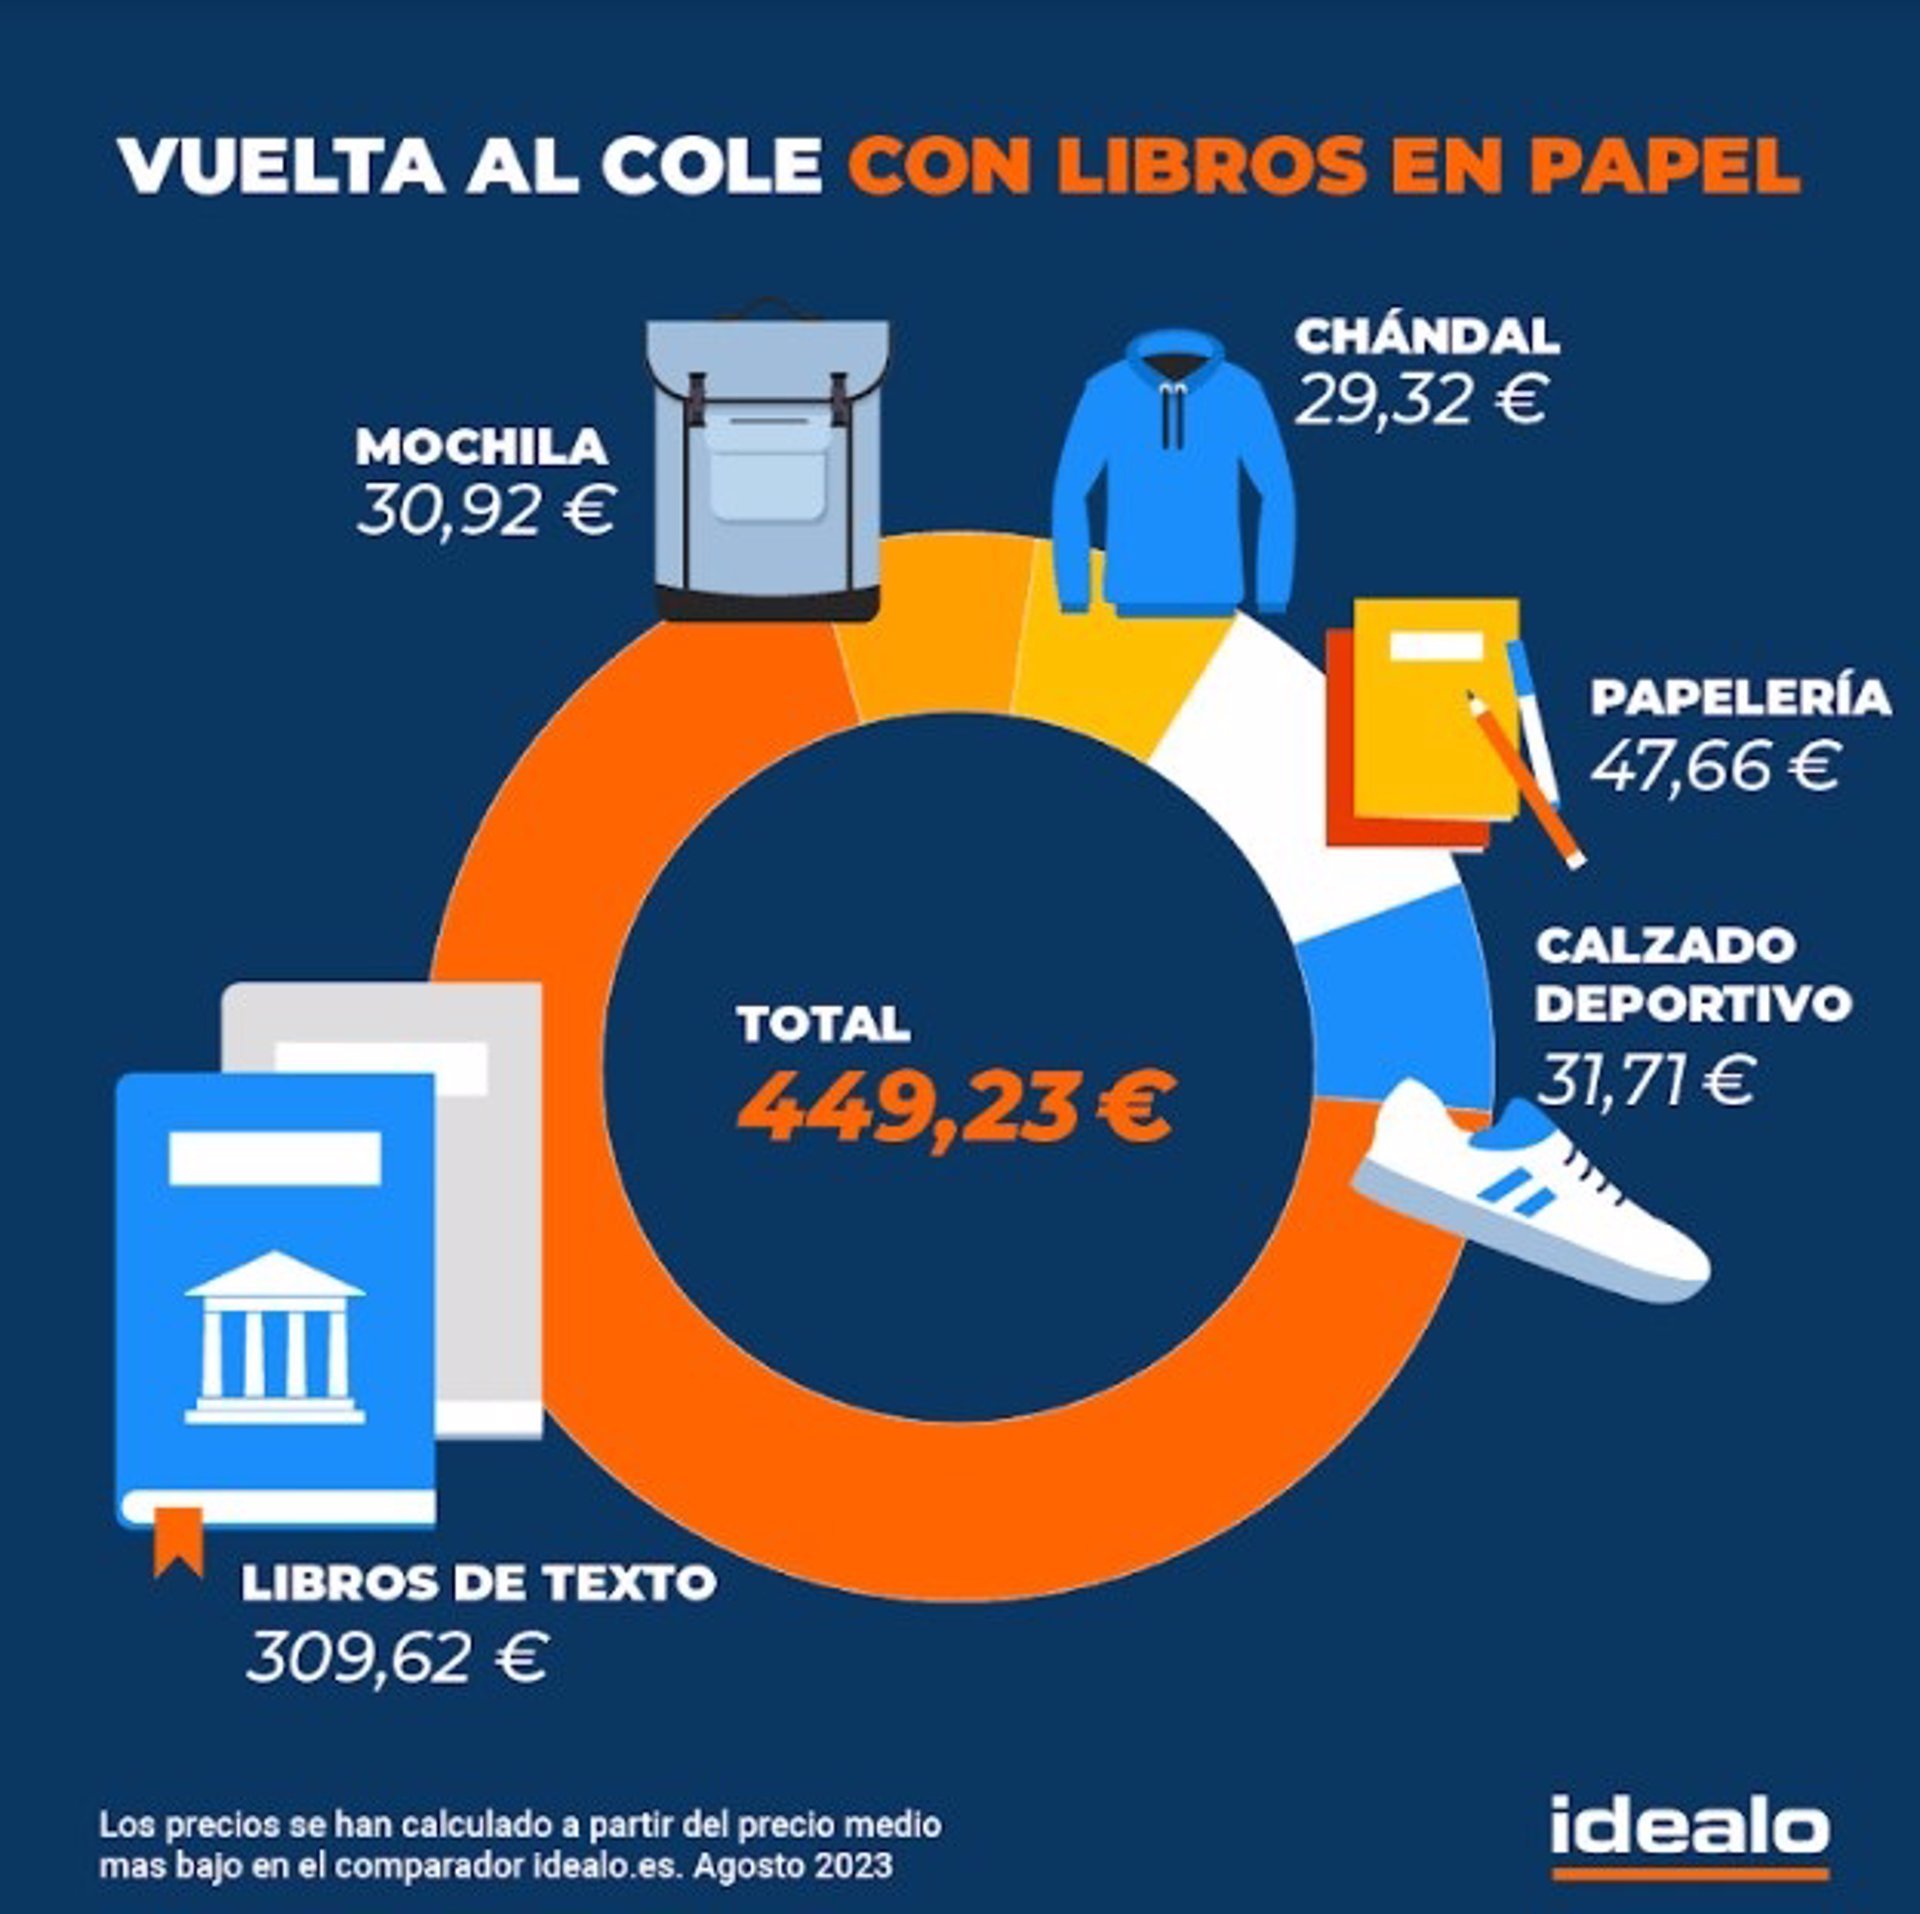 España es el país con los libros de texto más caros de Europa con un precio medio de 22,15 euros por libro, según un estudio